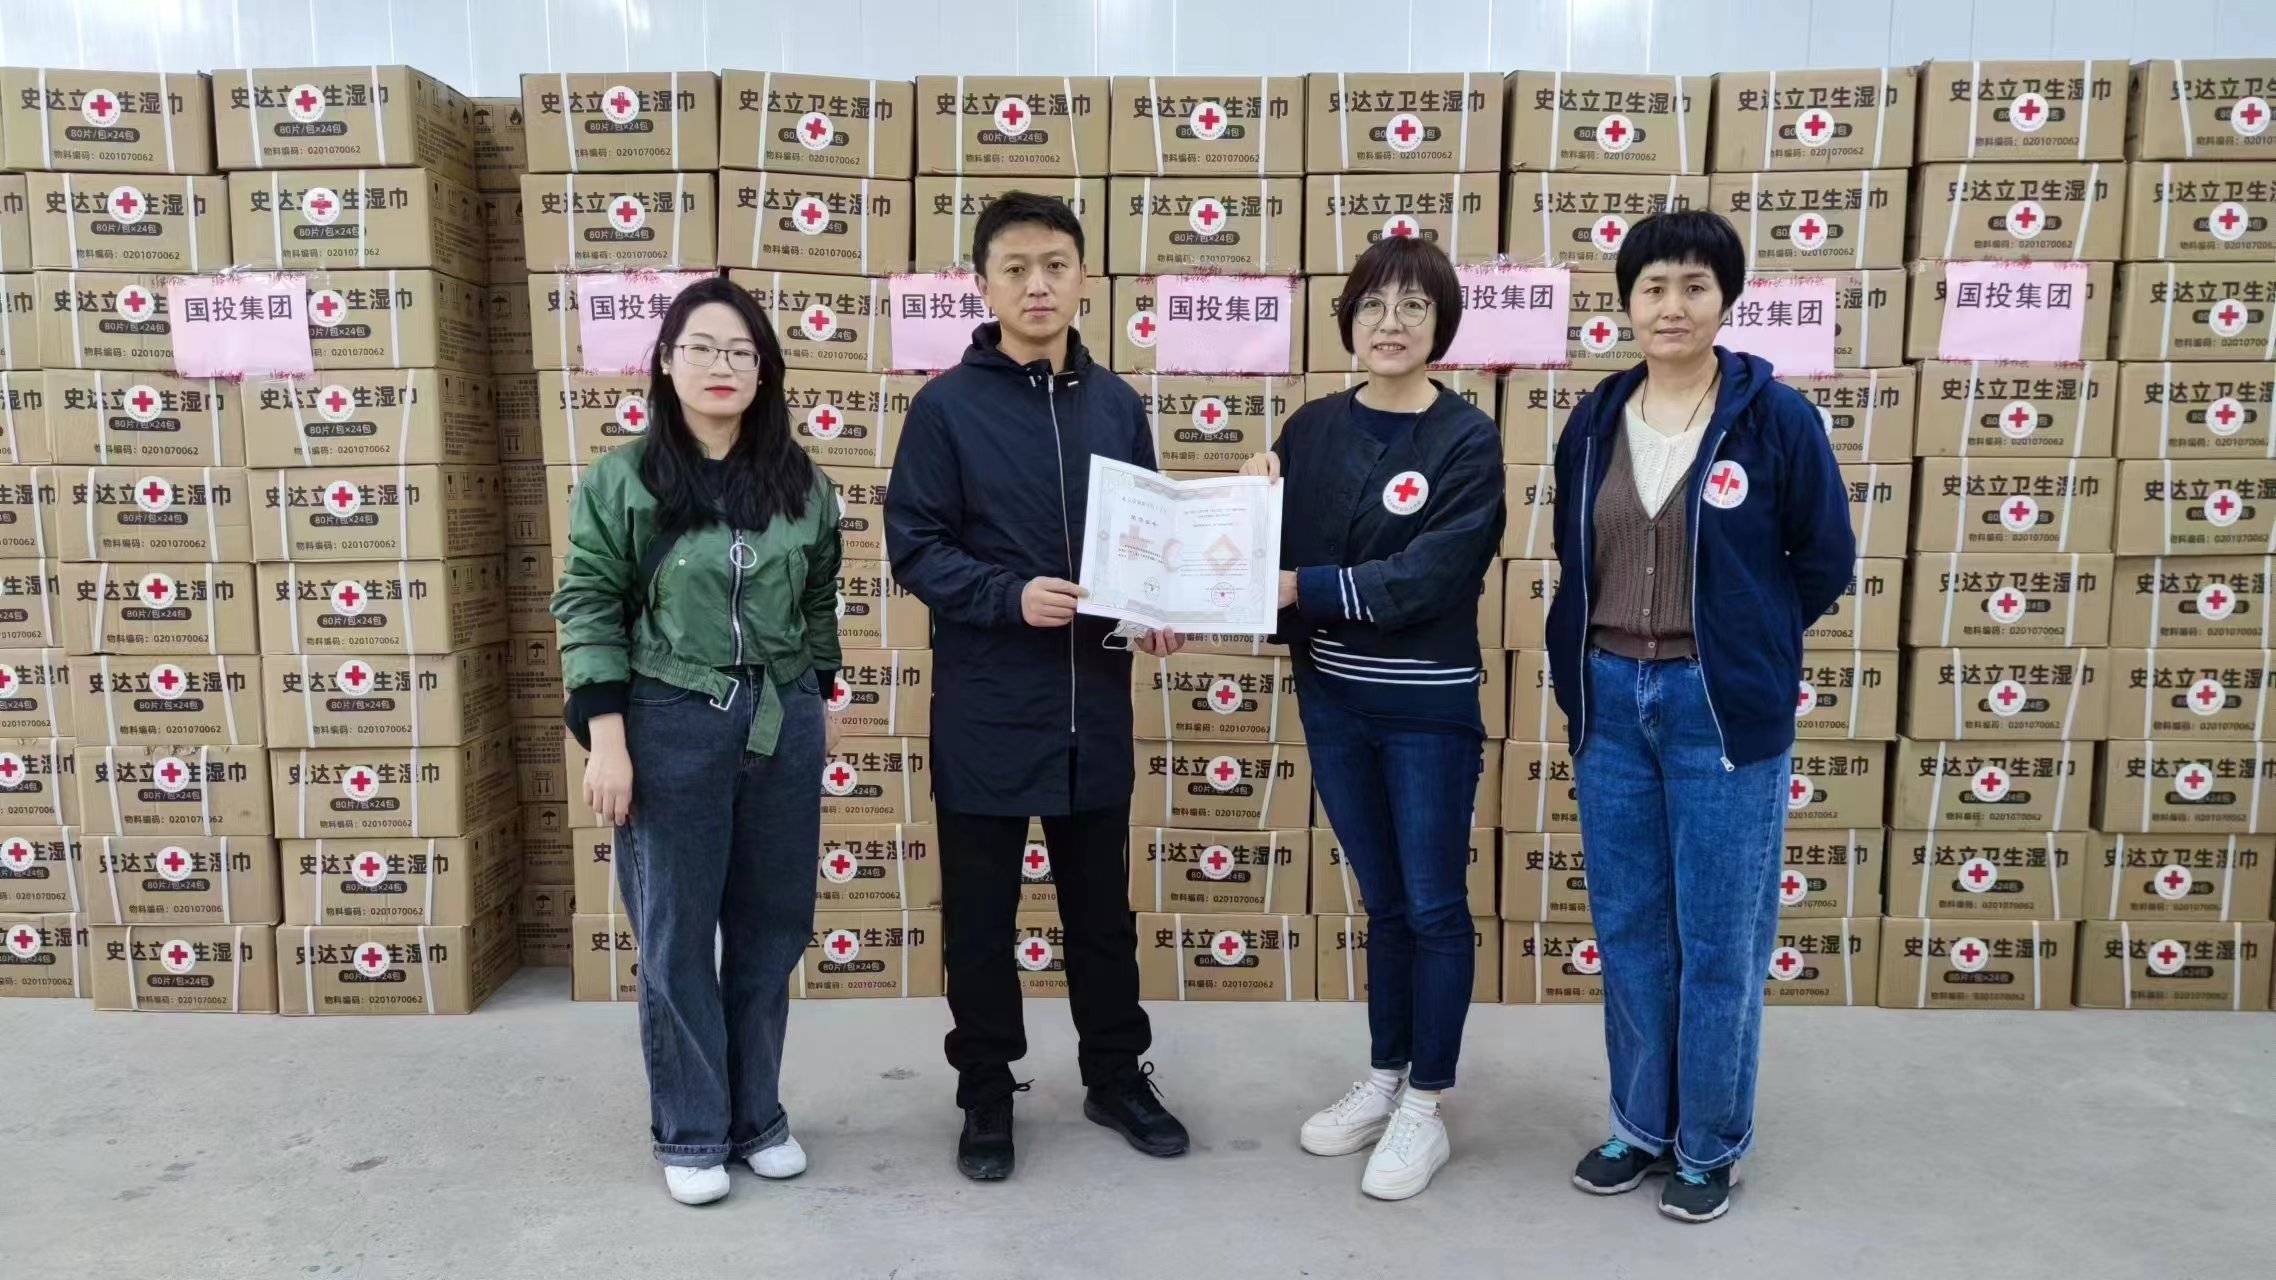 共抗疫情 央企在行動 國投集團向北京疫區捐贈抗疫物資